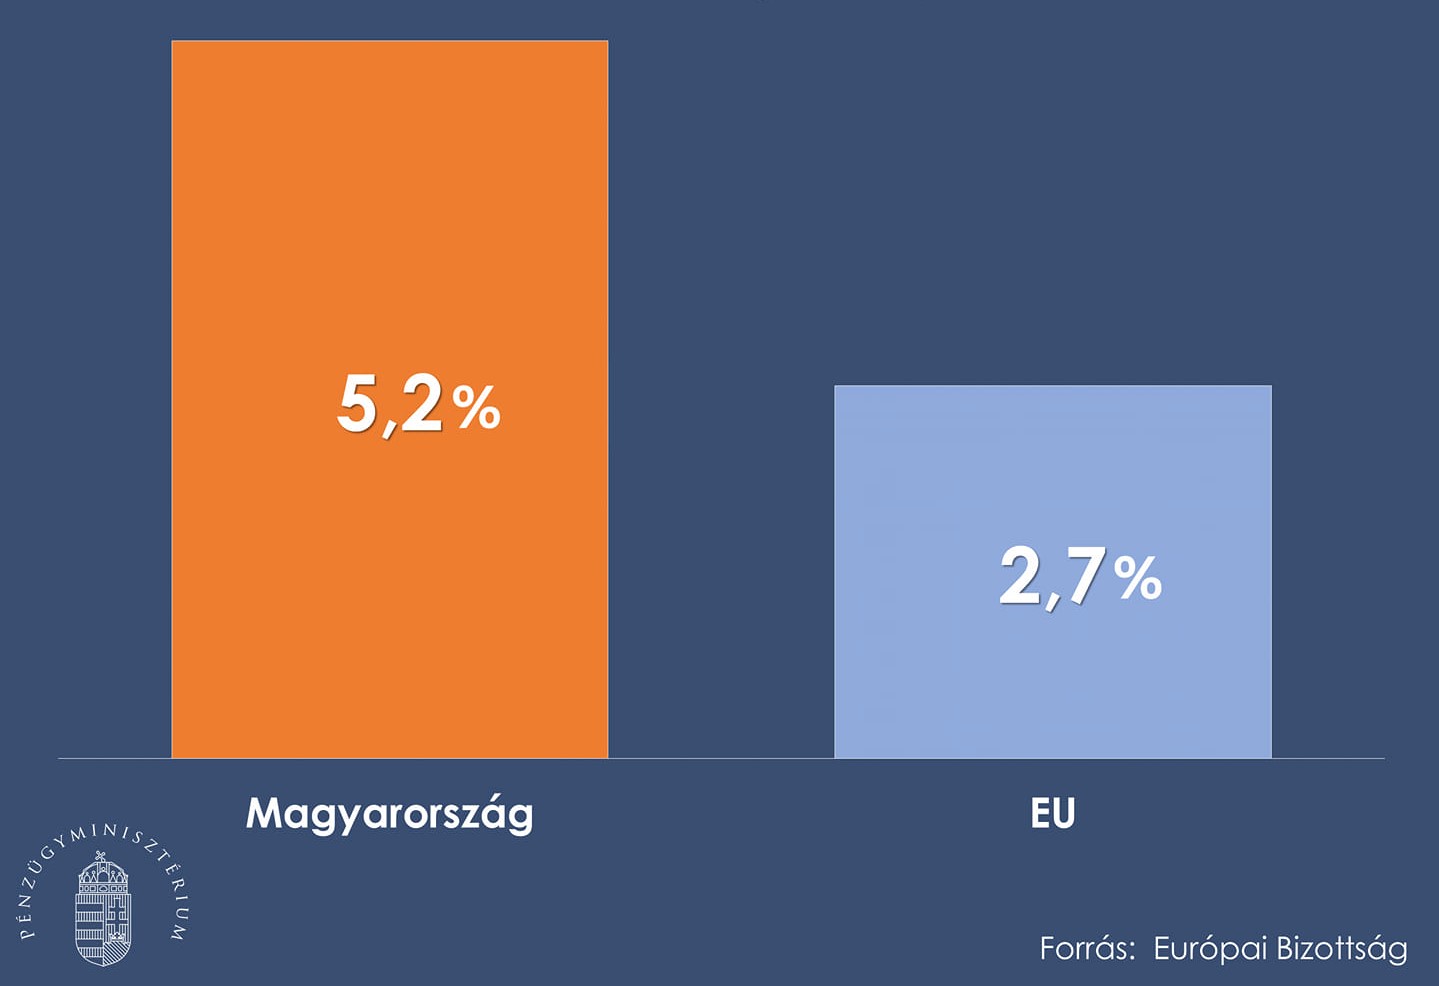 Ungarisches BIP-Wachstum könnte 2022 fast doppelt so hoch sein wie der EU-Durchschnitt